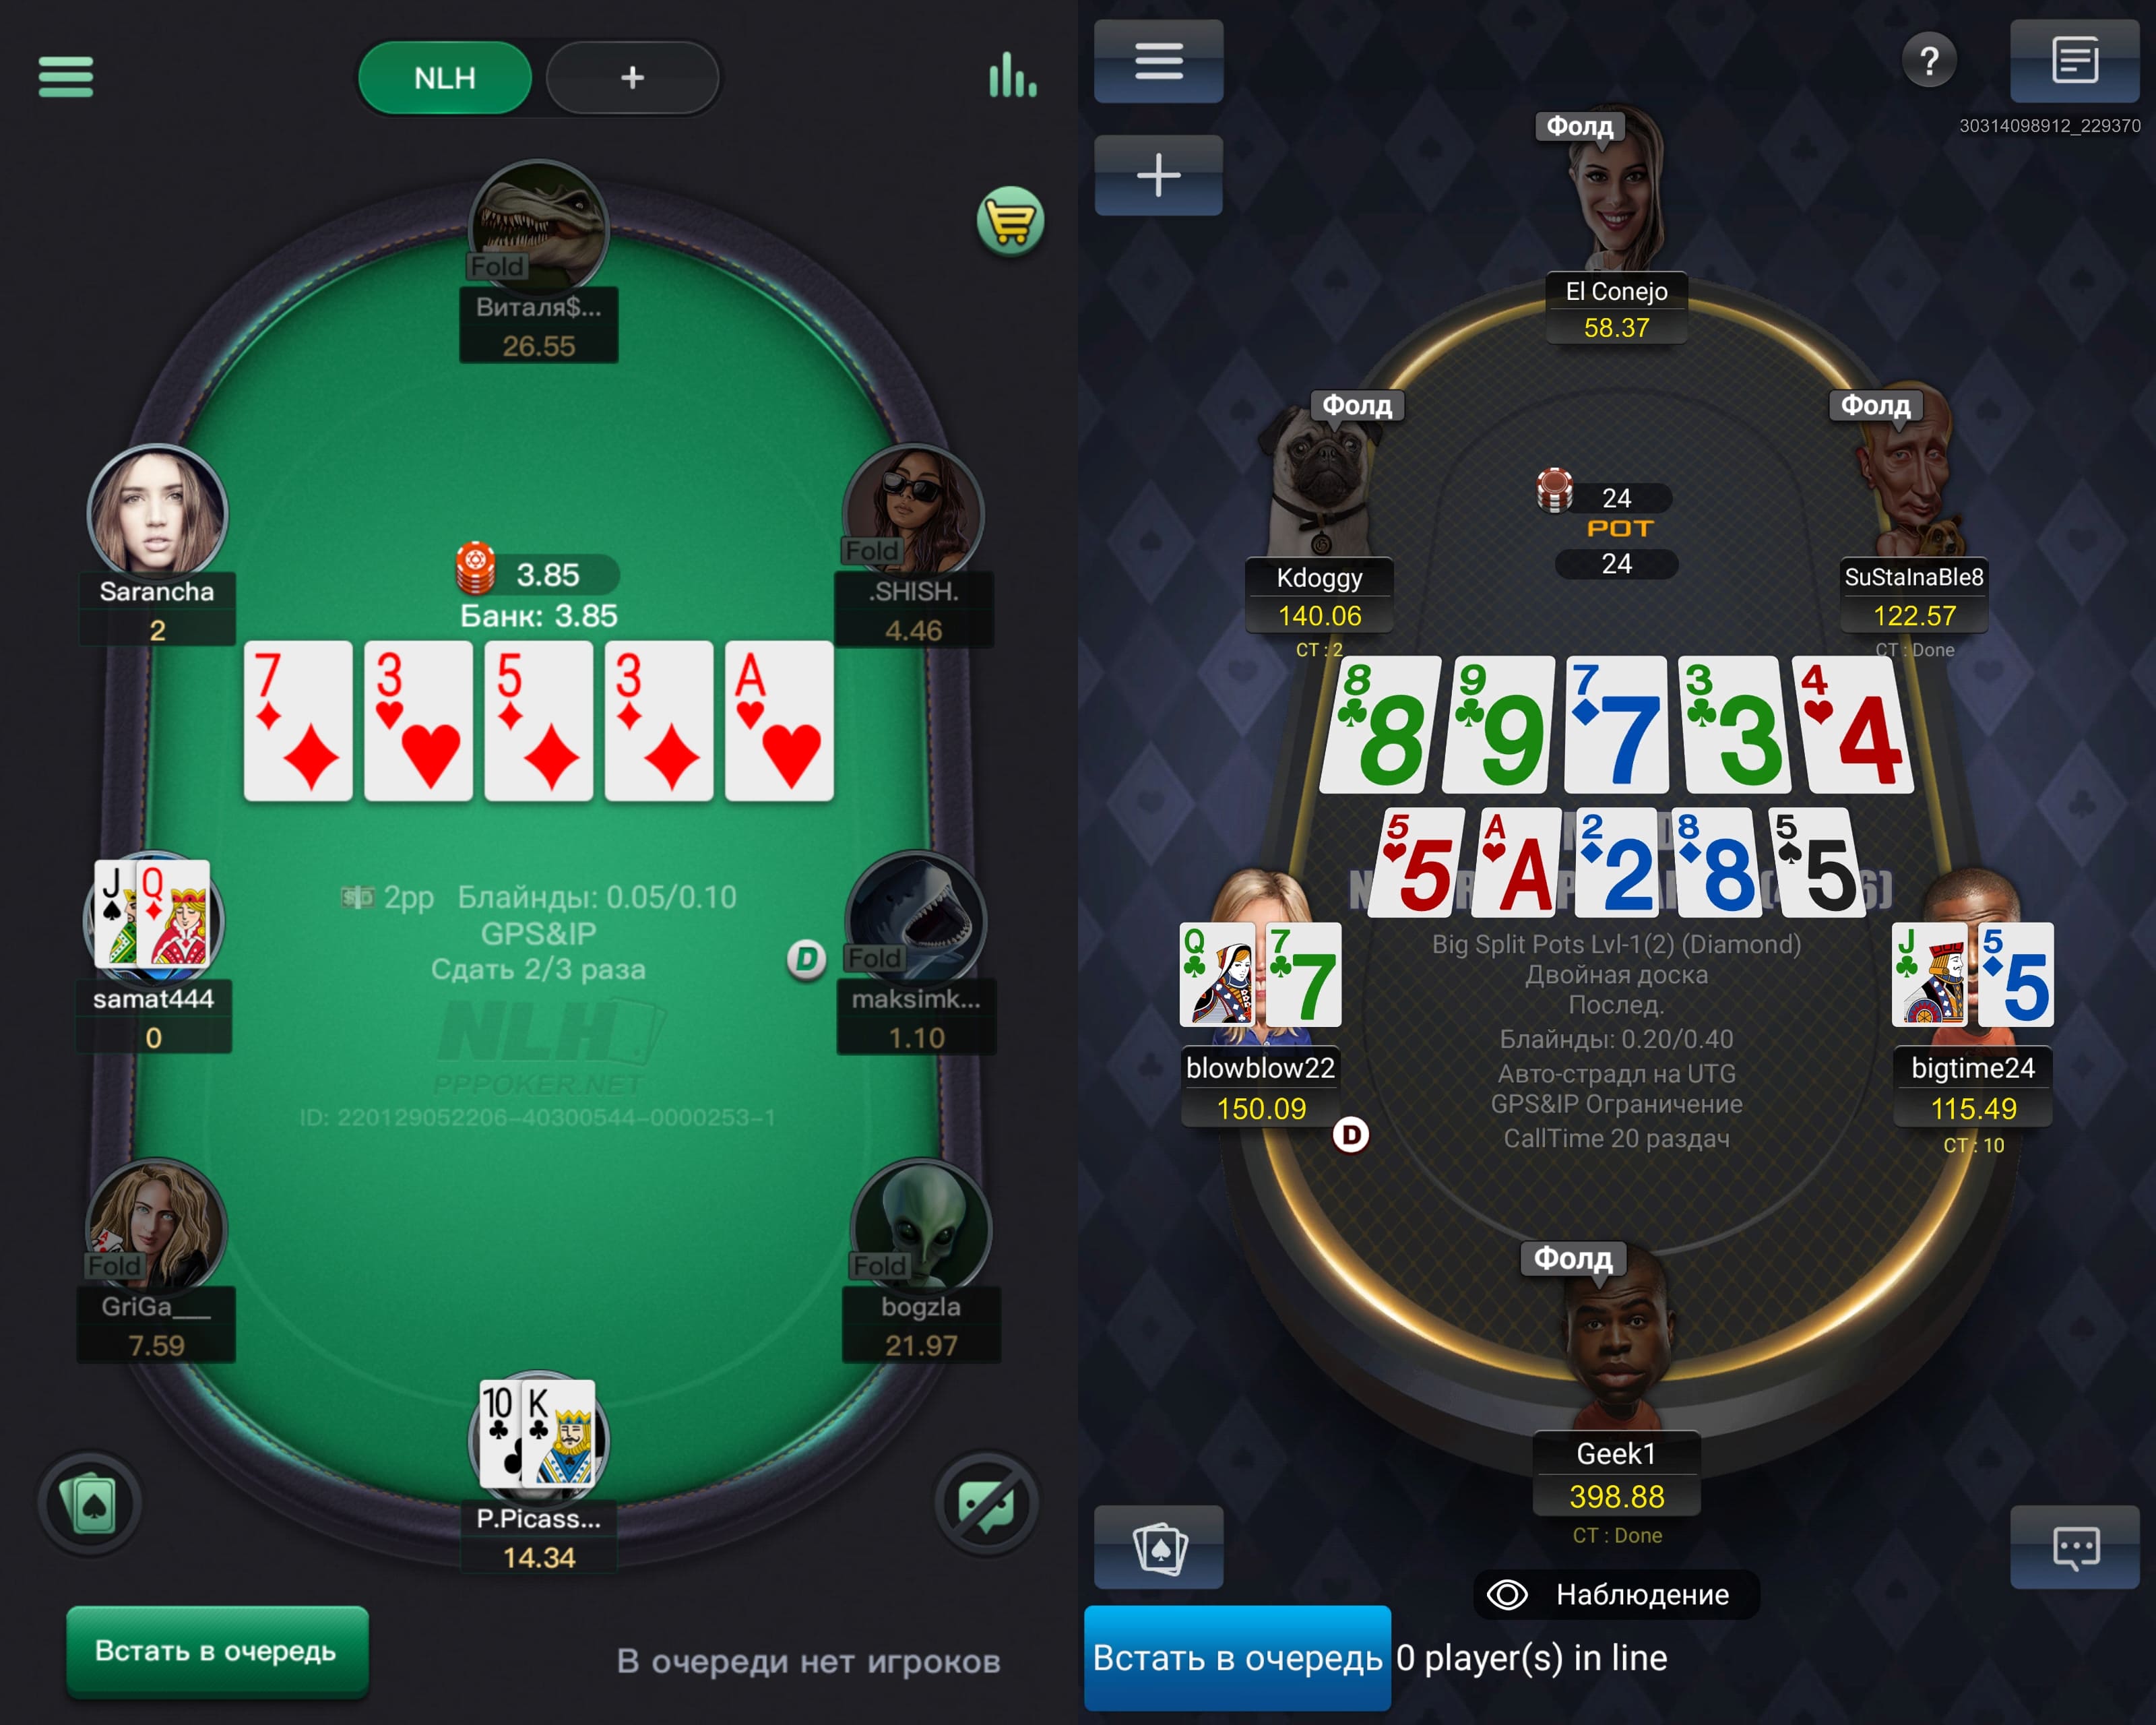 Оформление столов PPPoker покер (слева) и PokerBROS (справа)